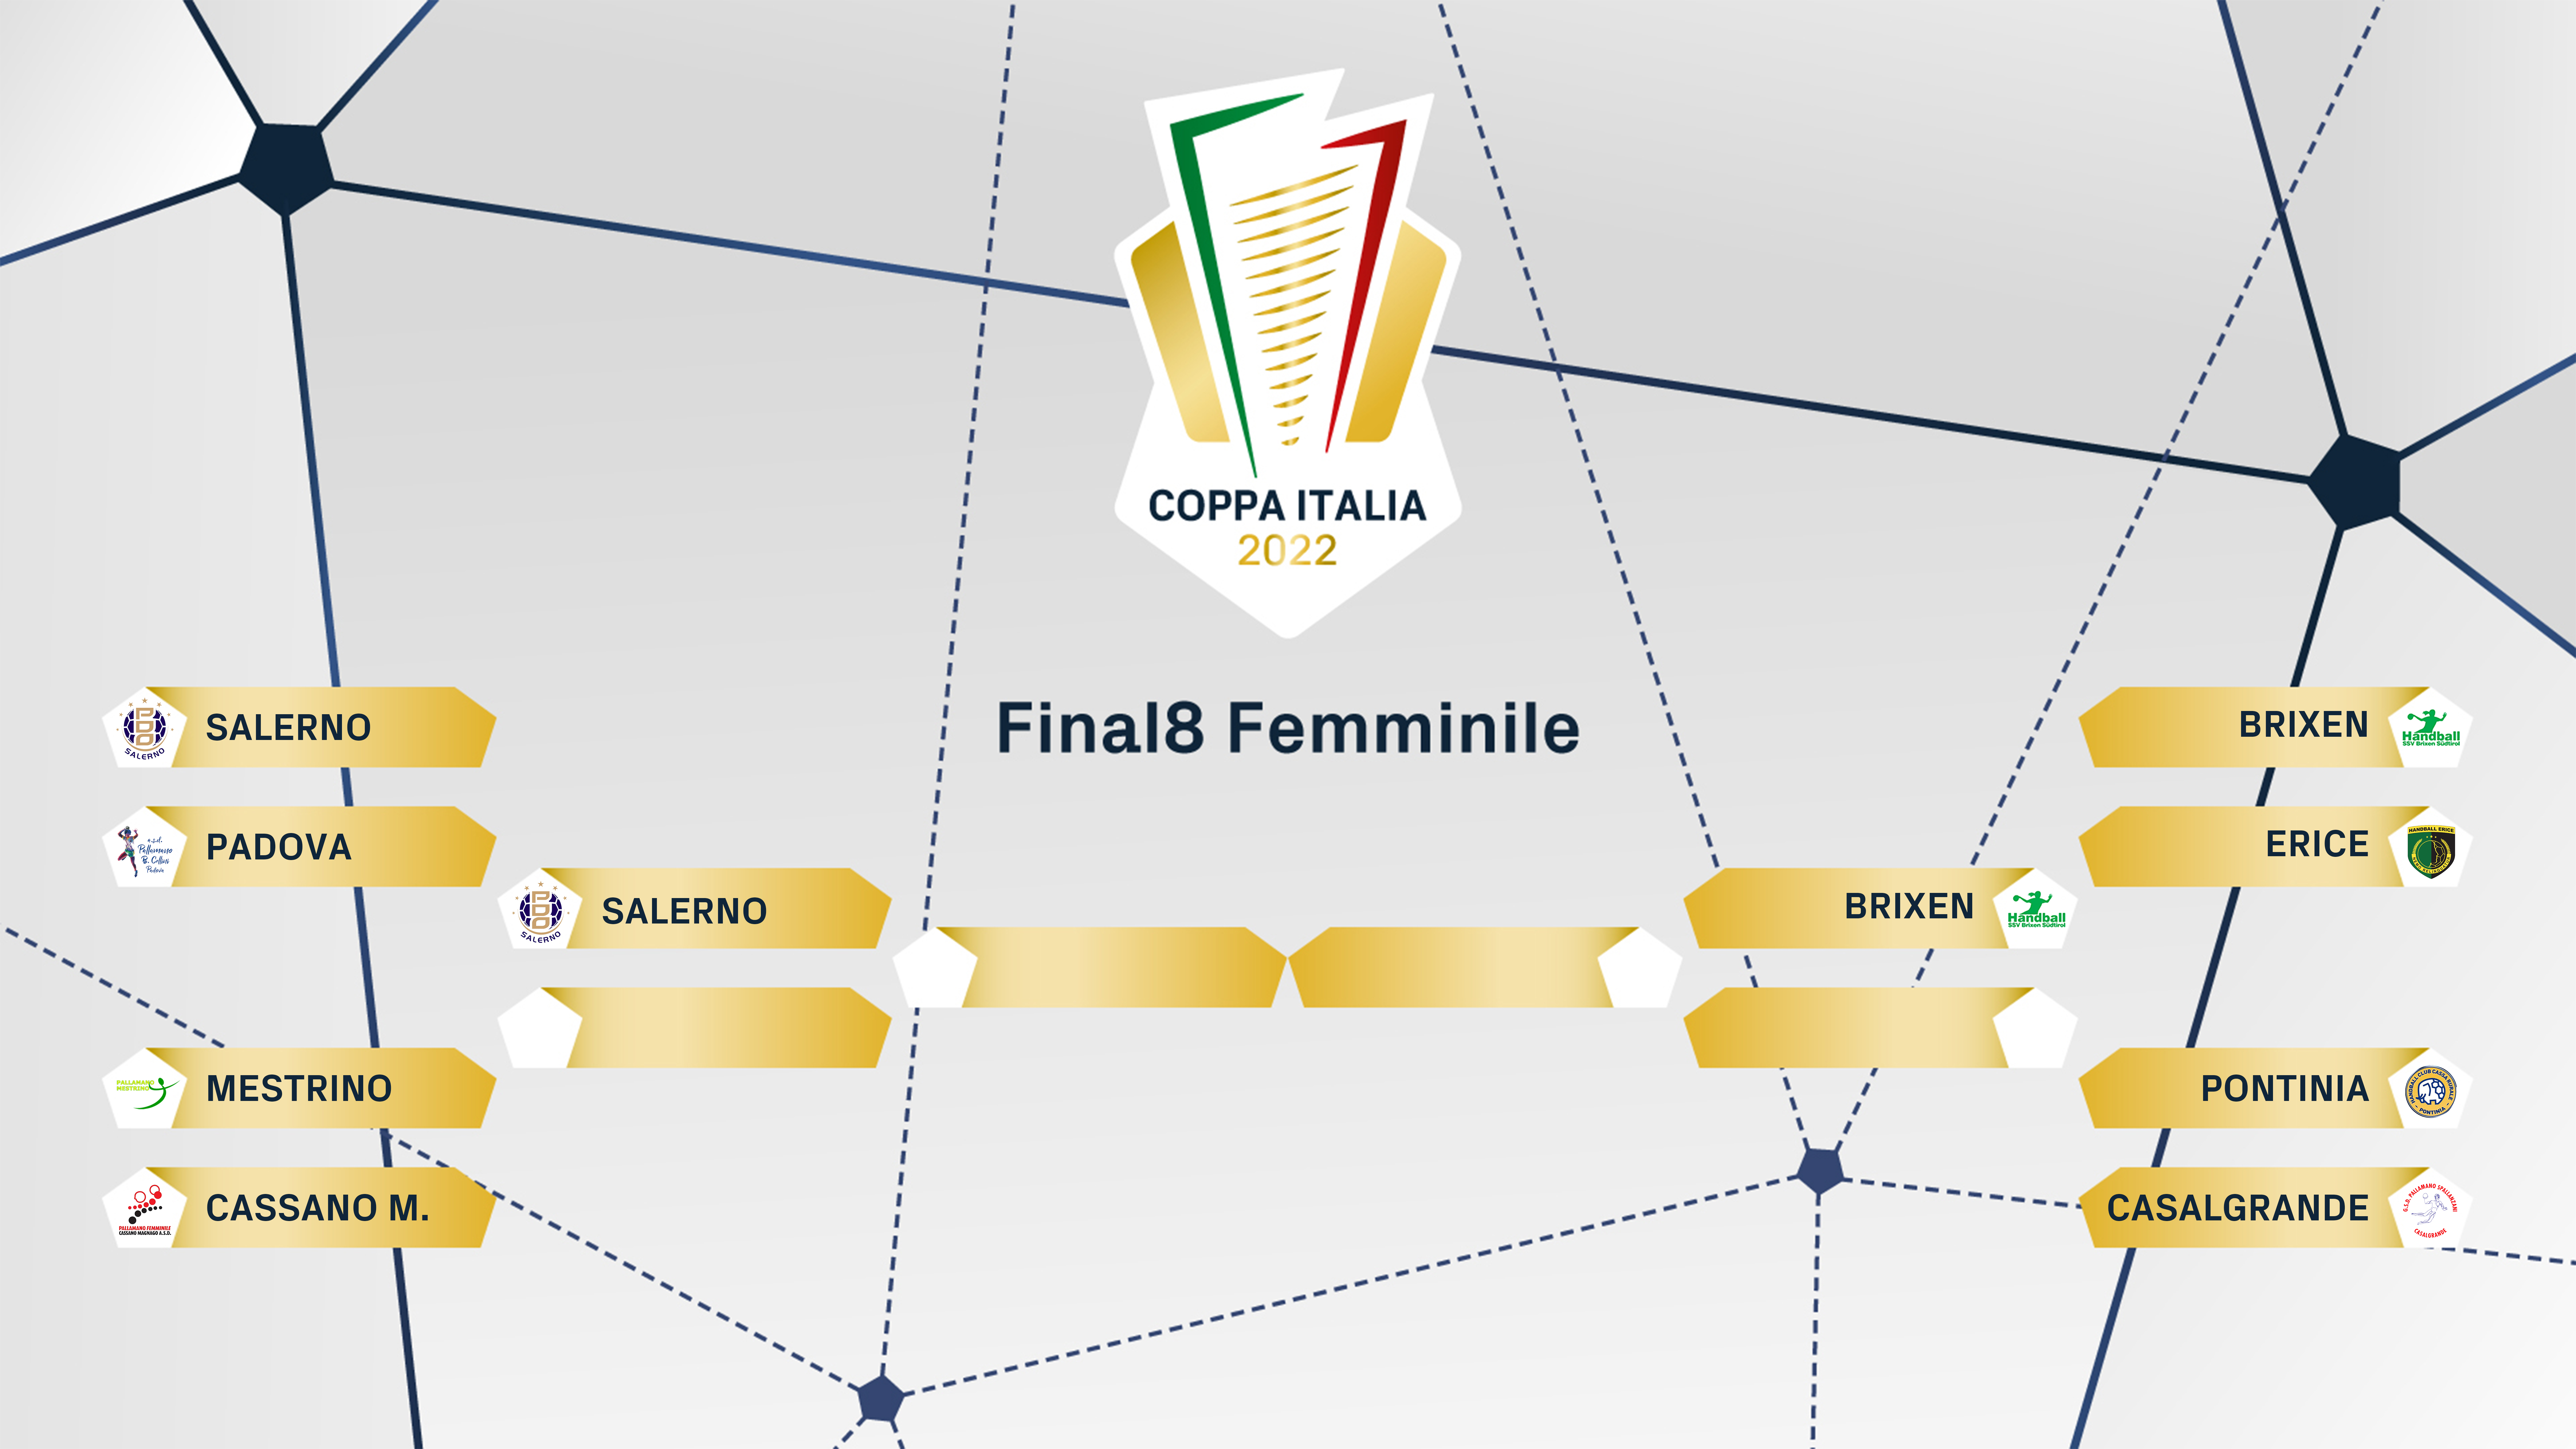 FIGH Coppa Italia tabelloni fem2